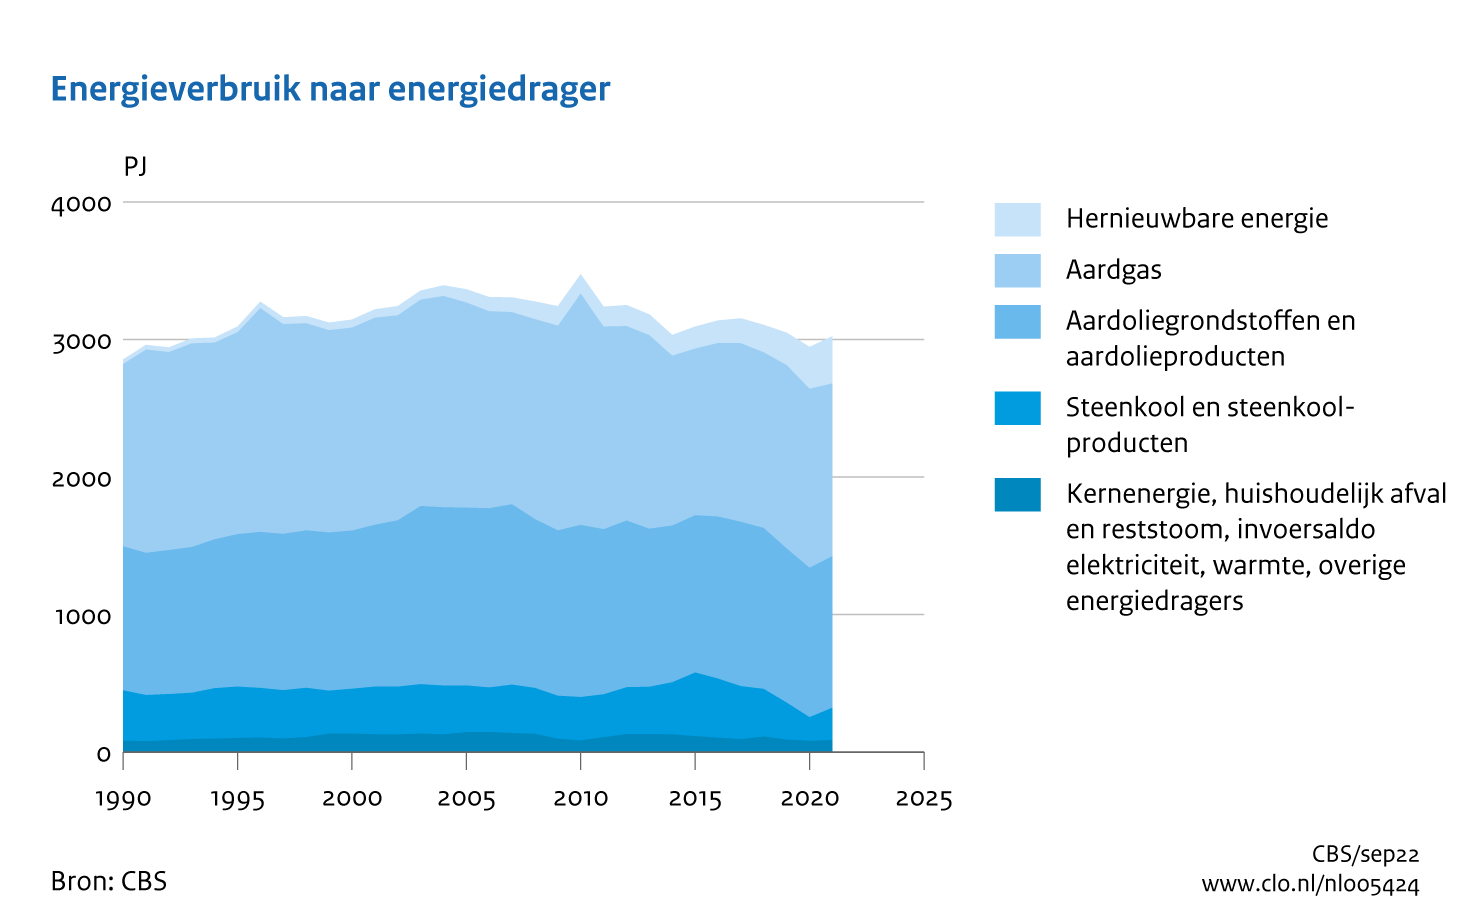 Figuur Energieverbruik per energiedrager 1990-2021. In de rest van de tekst wordt deze figuur uitgebreider uitgelegd.